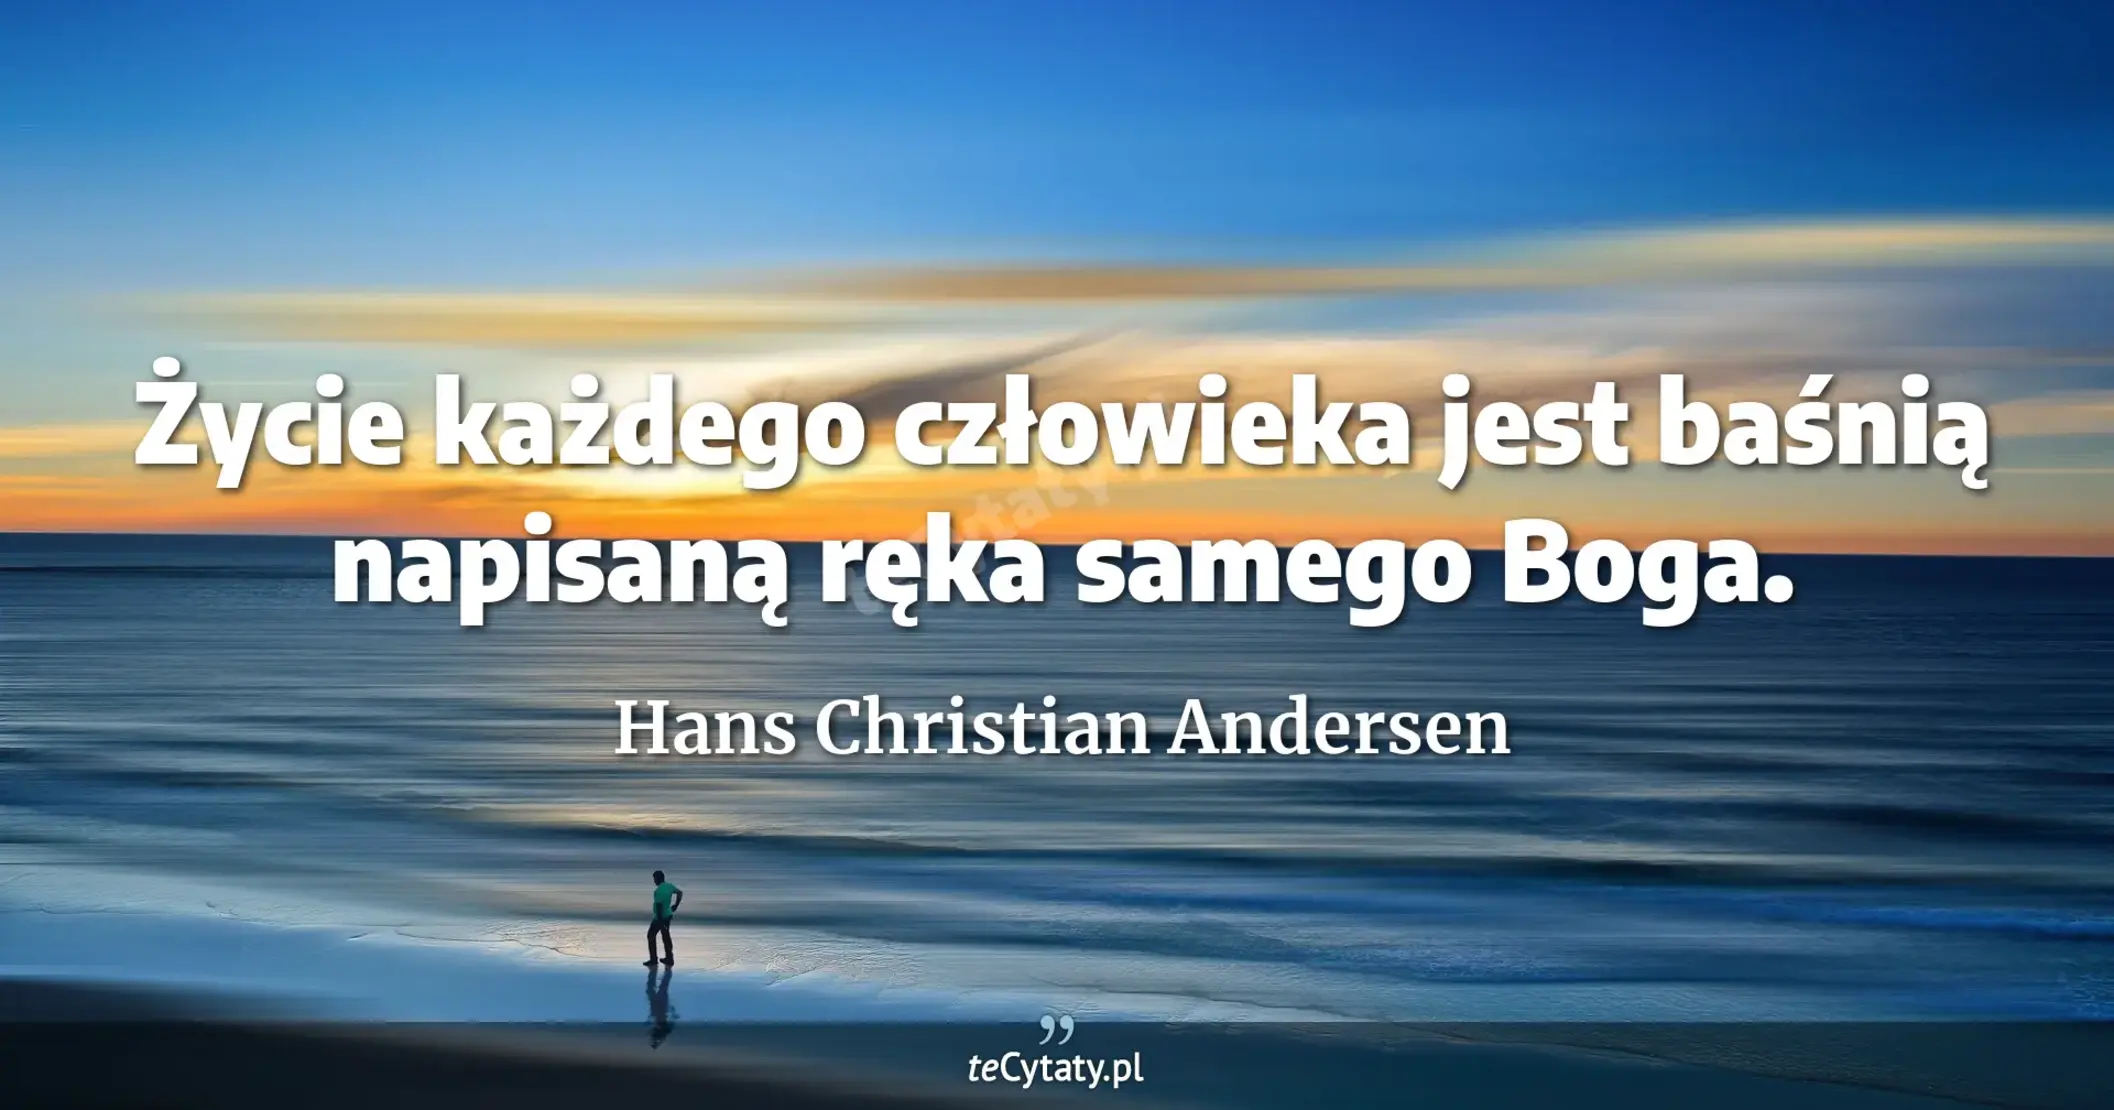 Życie każdego człowieka jest baśnią napisaną ręka samego Boga. - Hans Christian Andersen